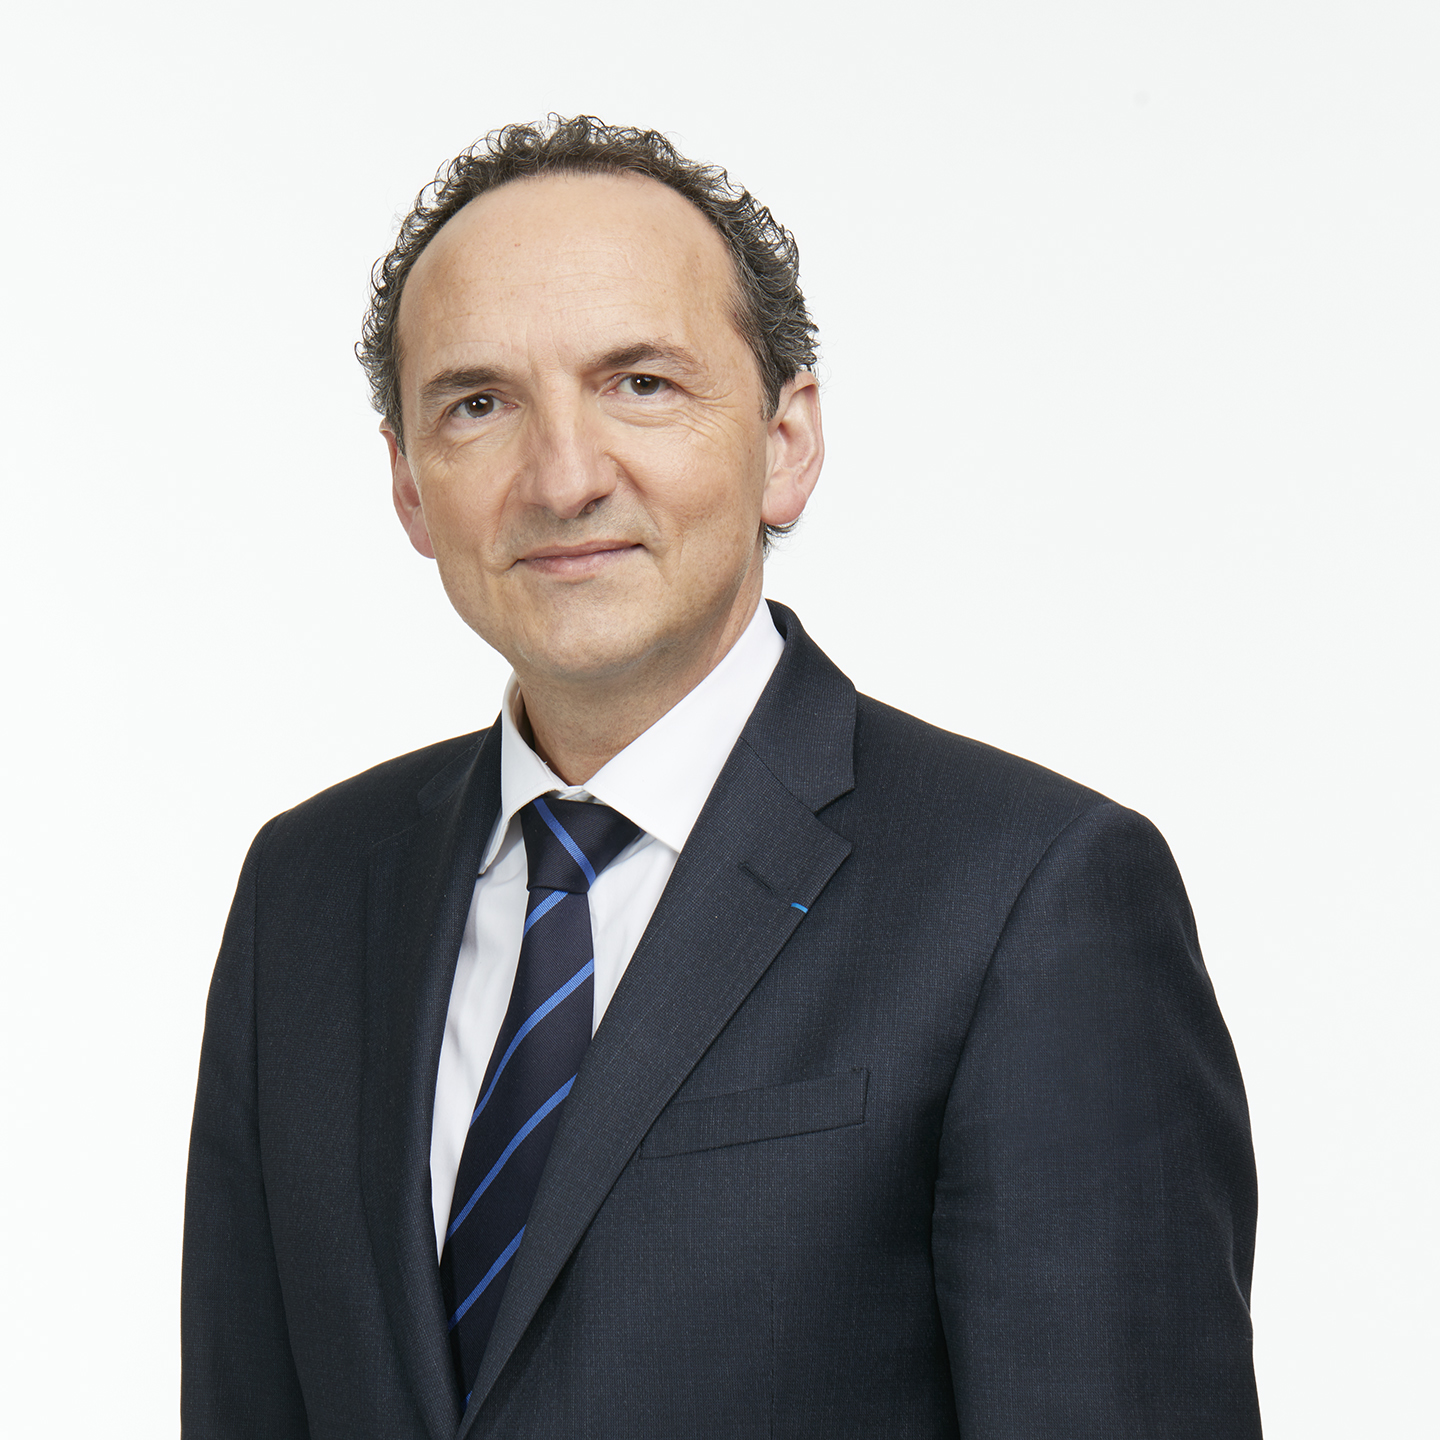 Les entretiens de l’APVF : Questions à Frank Lacroix, Directeur général TER, SNCF